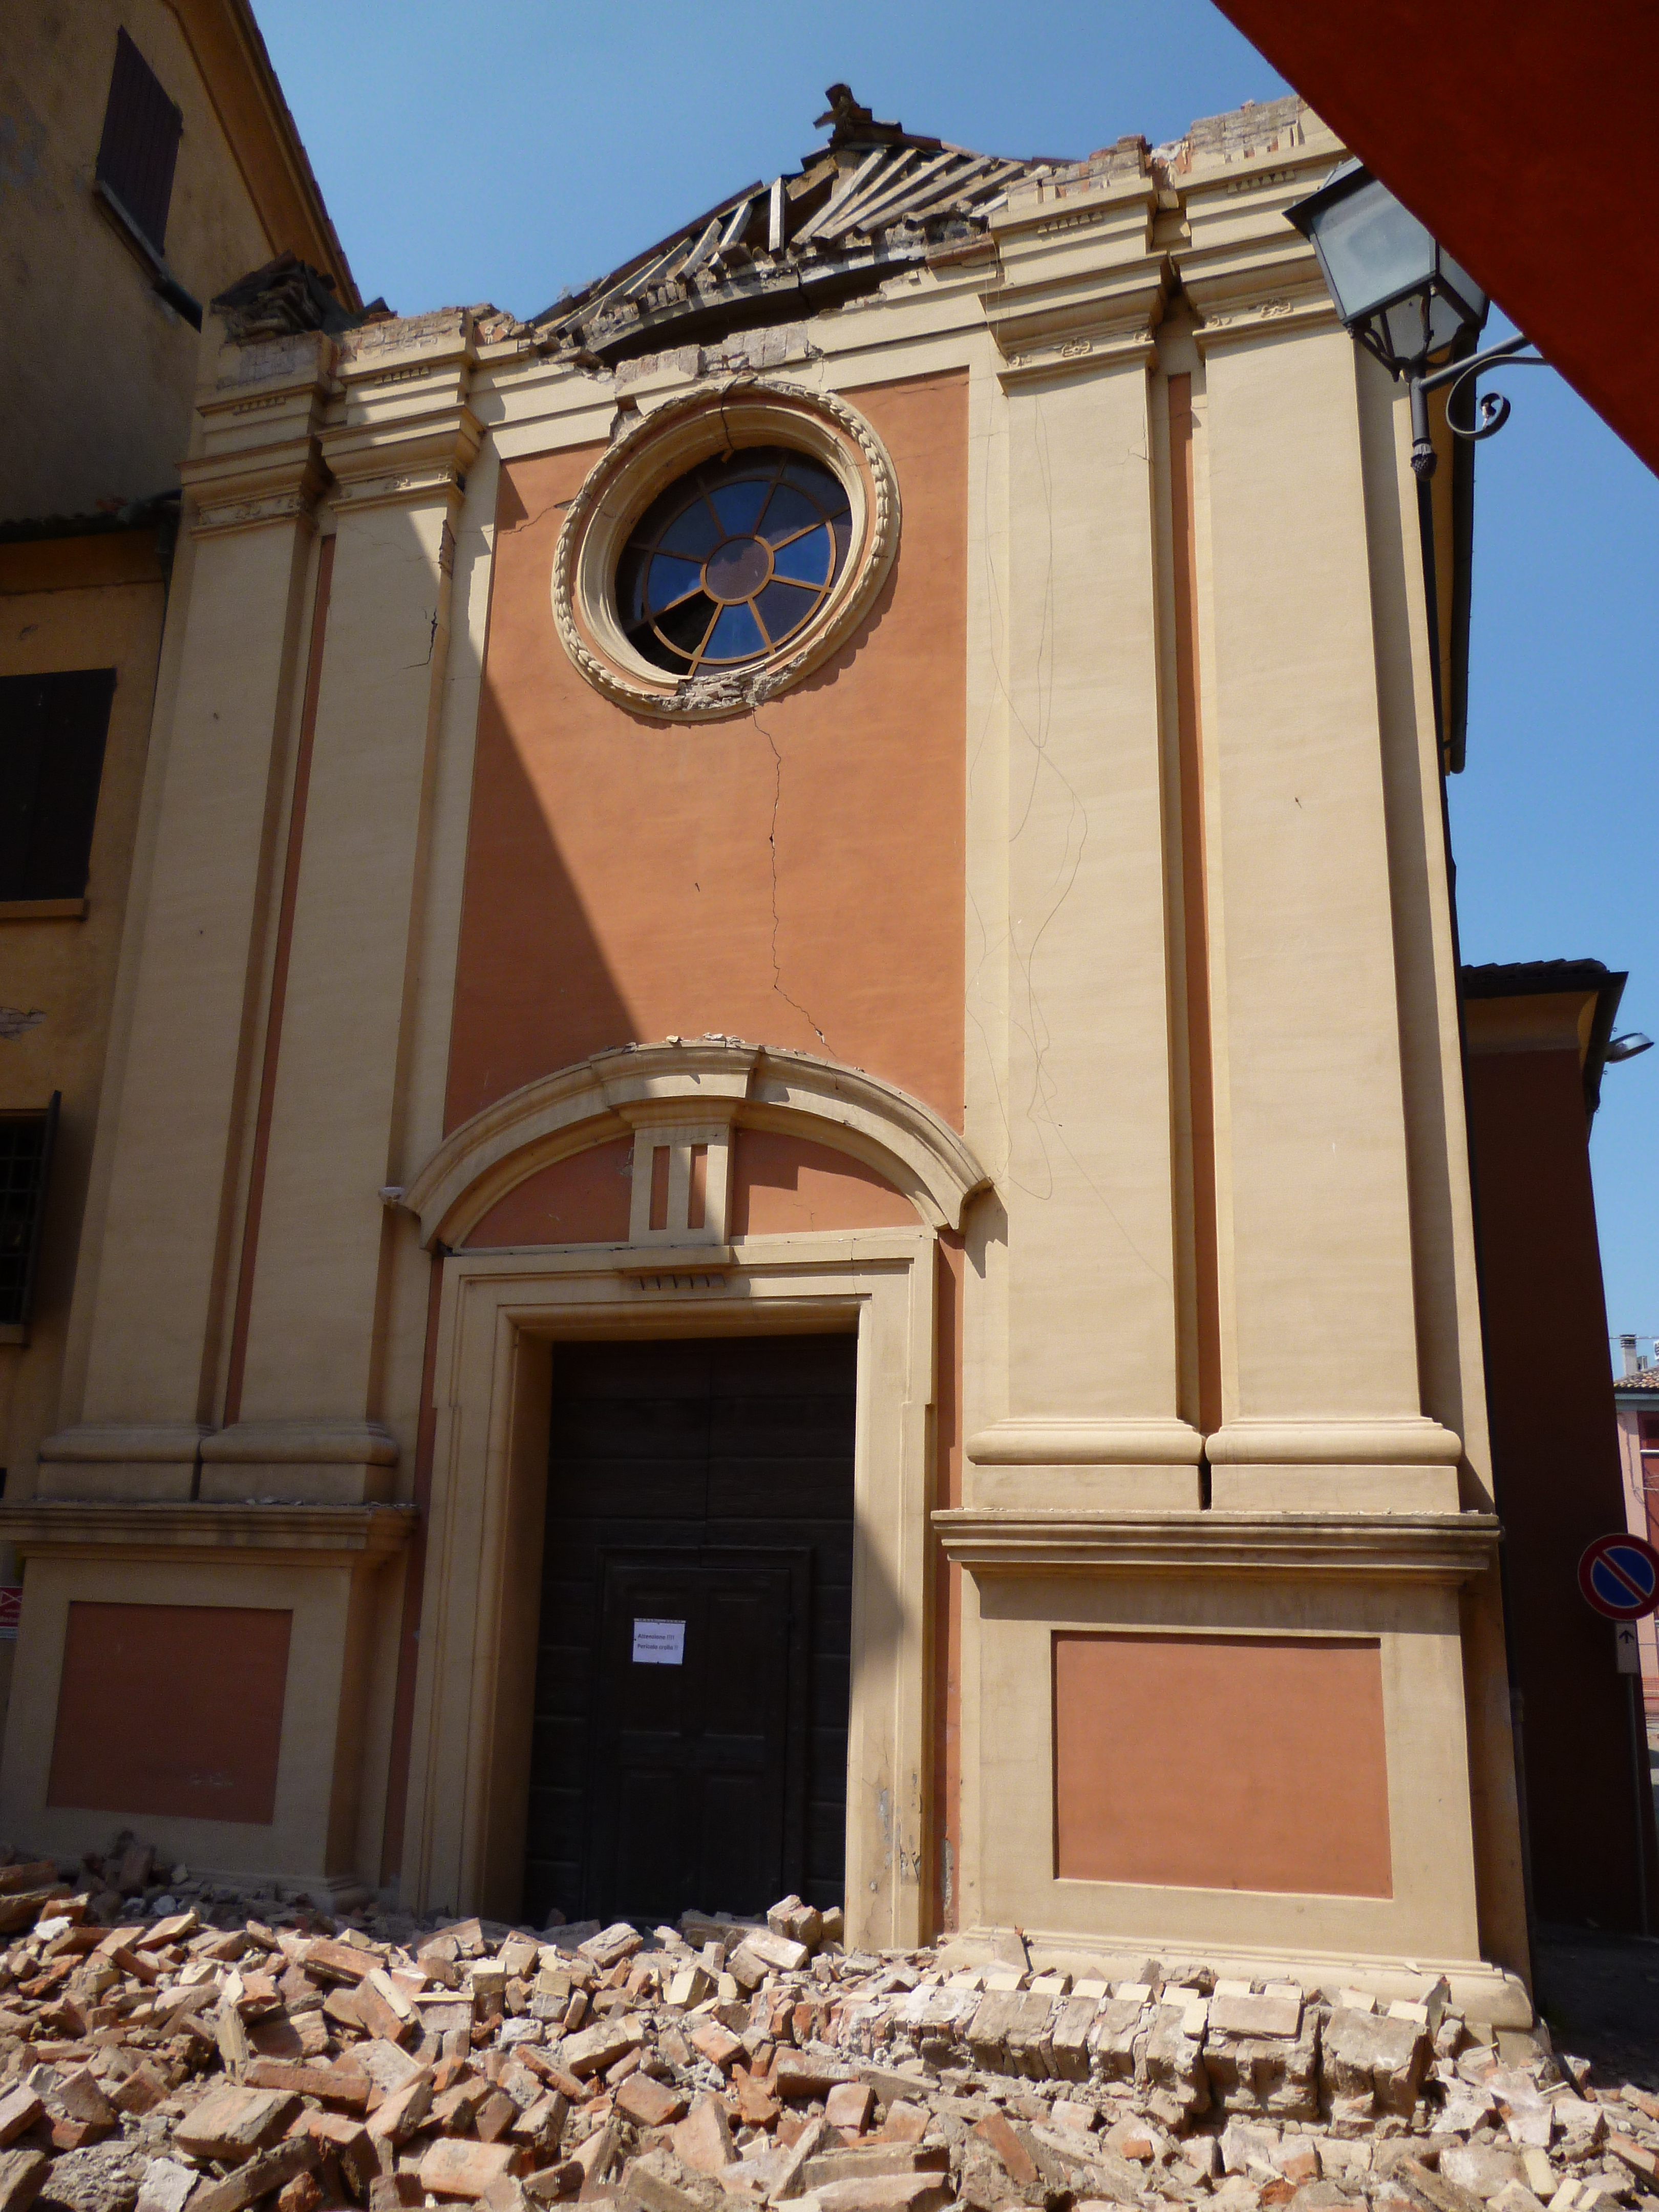 photo: https://upload.wikimedia.org/wikipedia/commons/7/72/Facciata_centrale_danno_terremoto_29-05-2012%2C_Oratorio_di_Santa_Croce_-_San_Felice_sul_Panaro.JPG